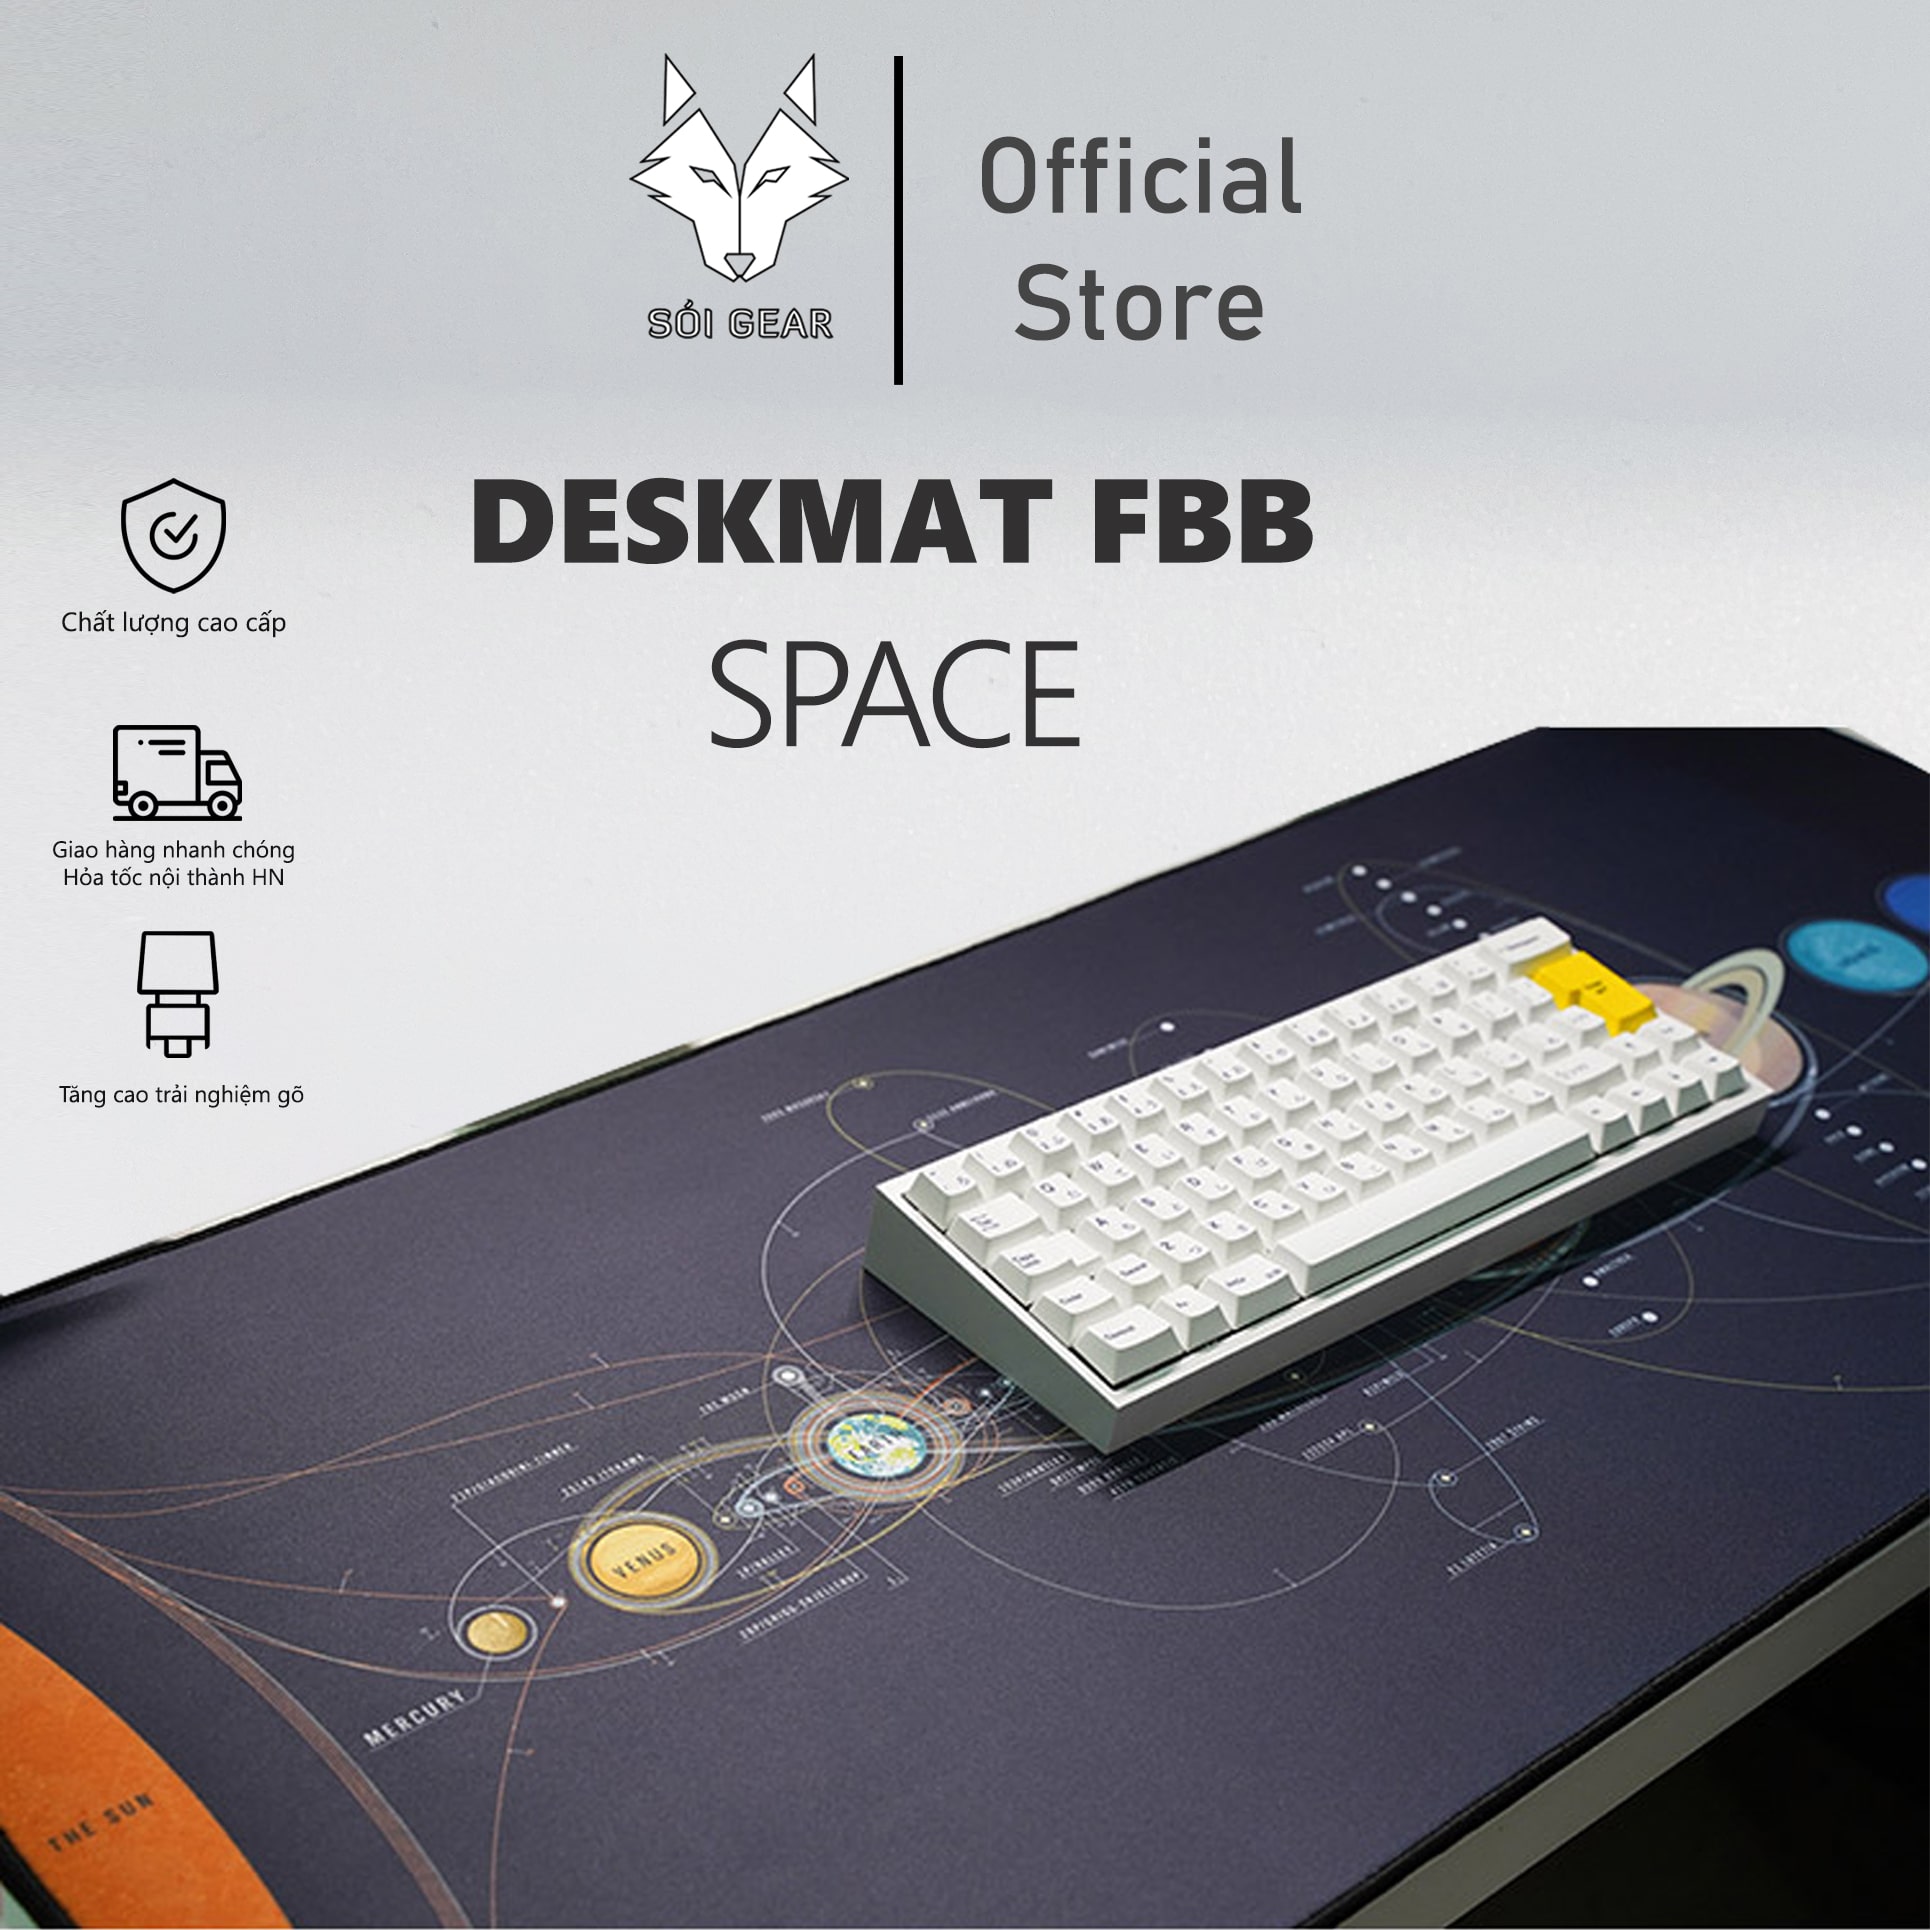 Deskmat FBB Space